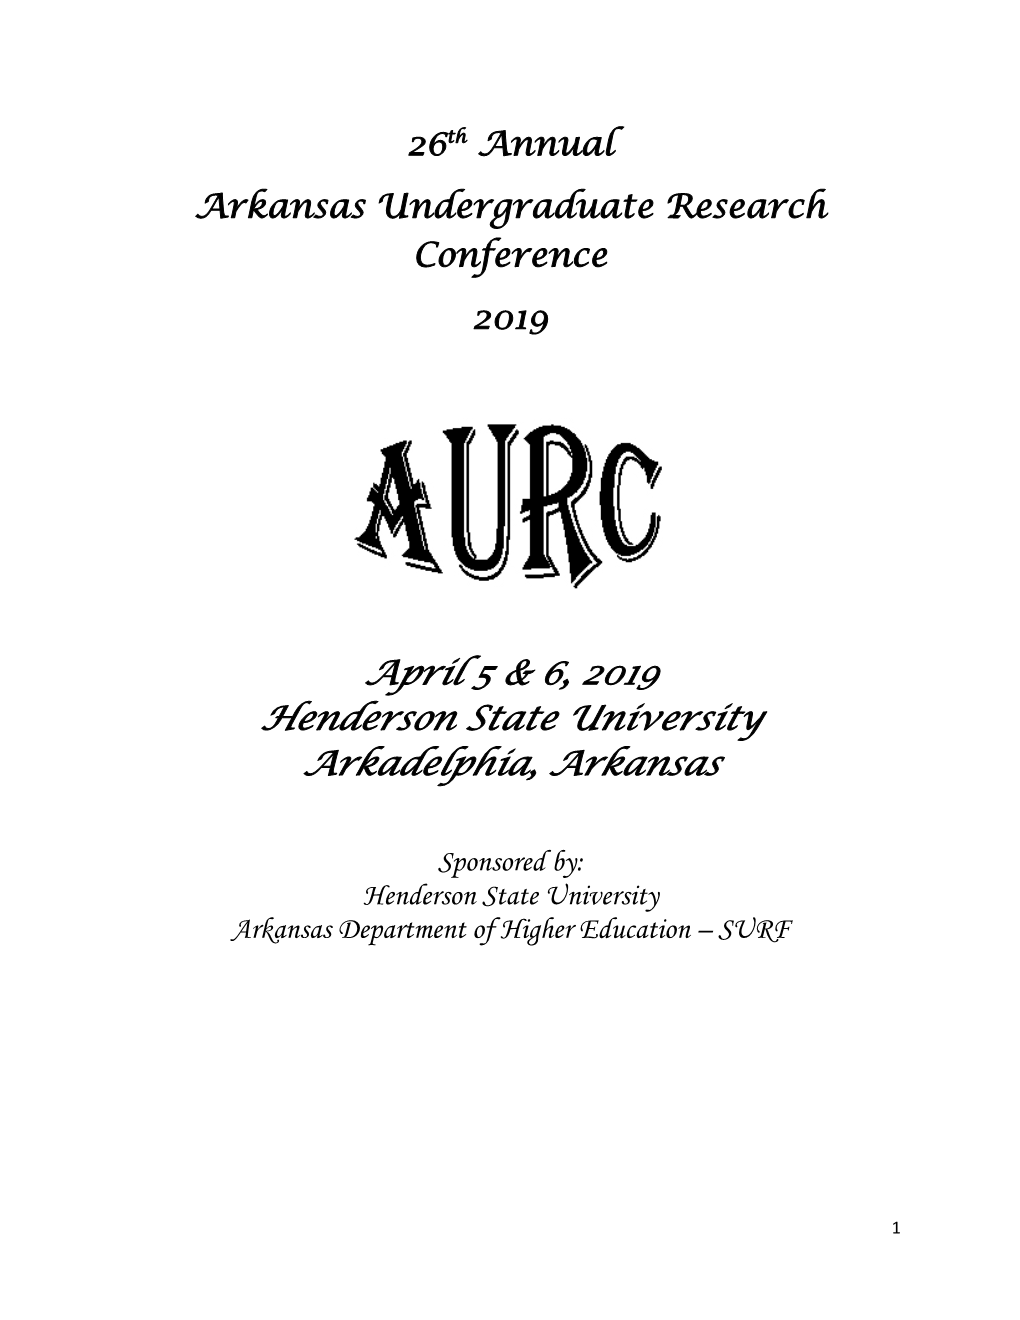 April 5 & 6, 2019 Henderson State University Arkadelphia, Arkansas